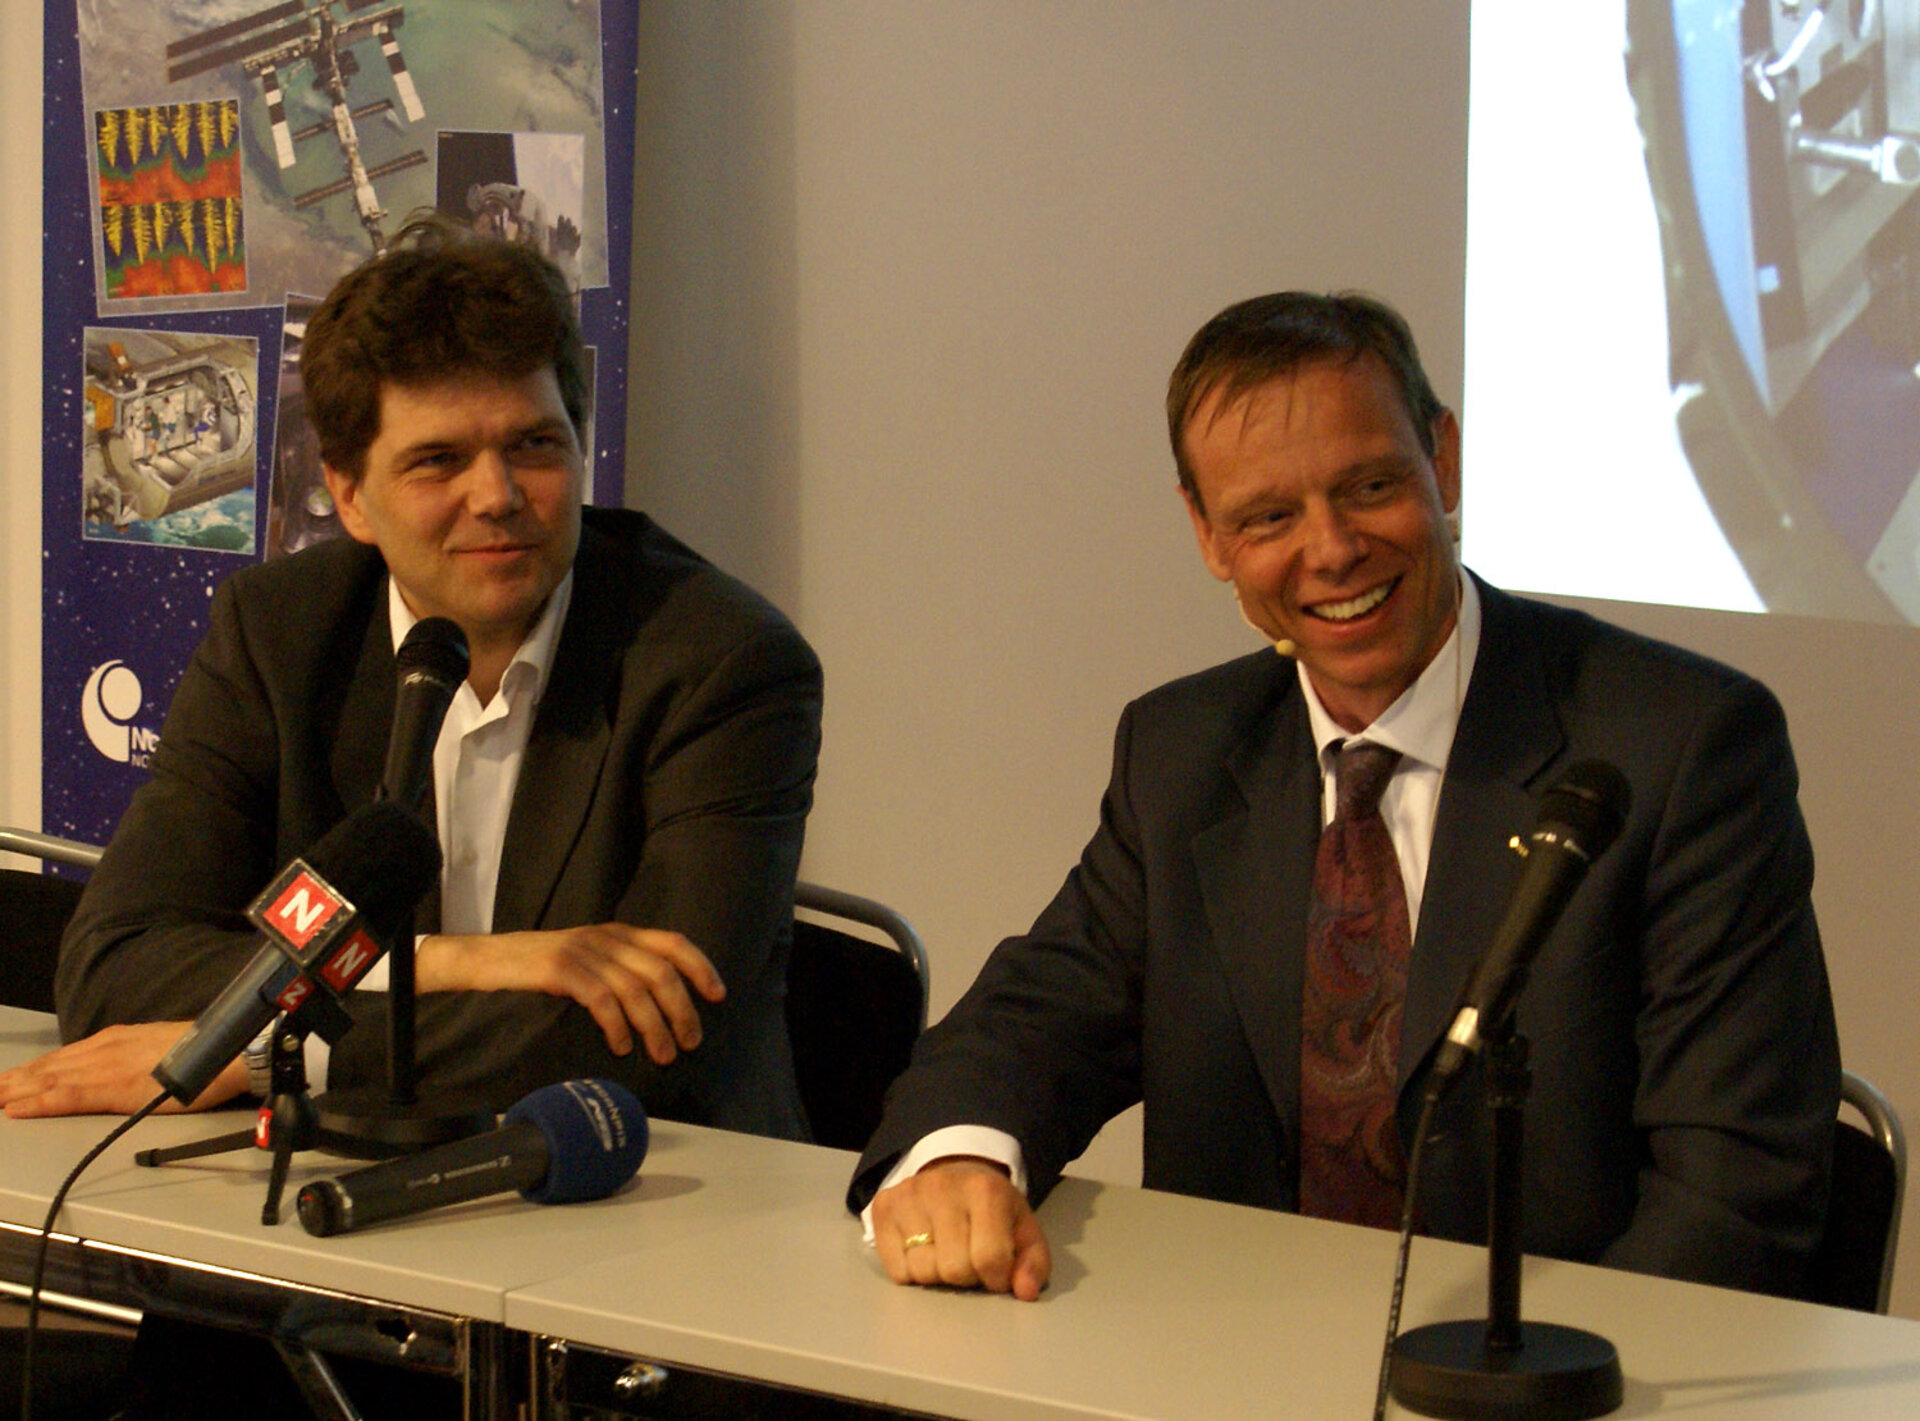 Fra venstre: Gaute Einevoll og Christer Fuglesang